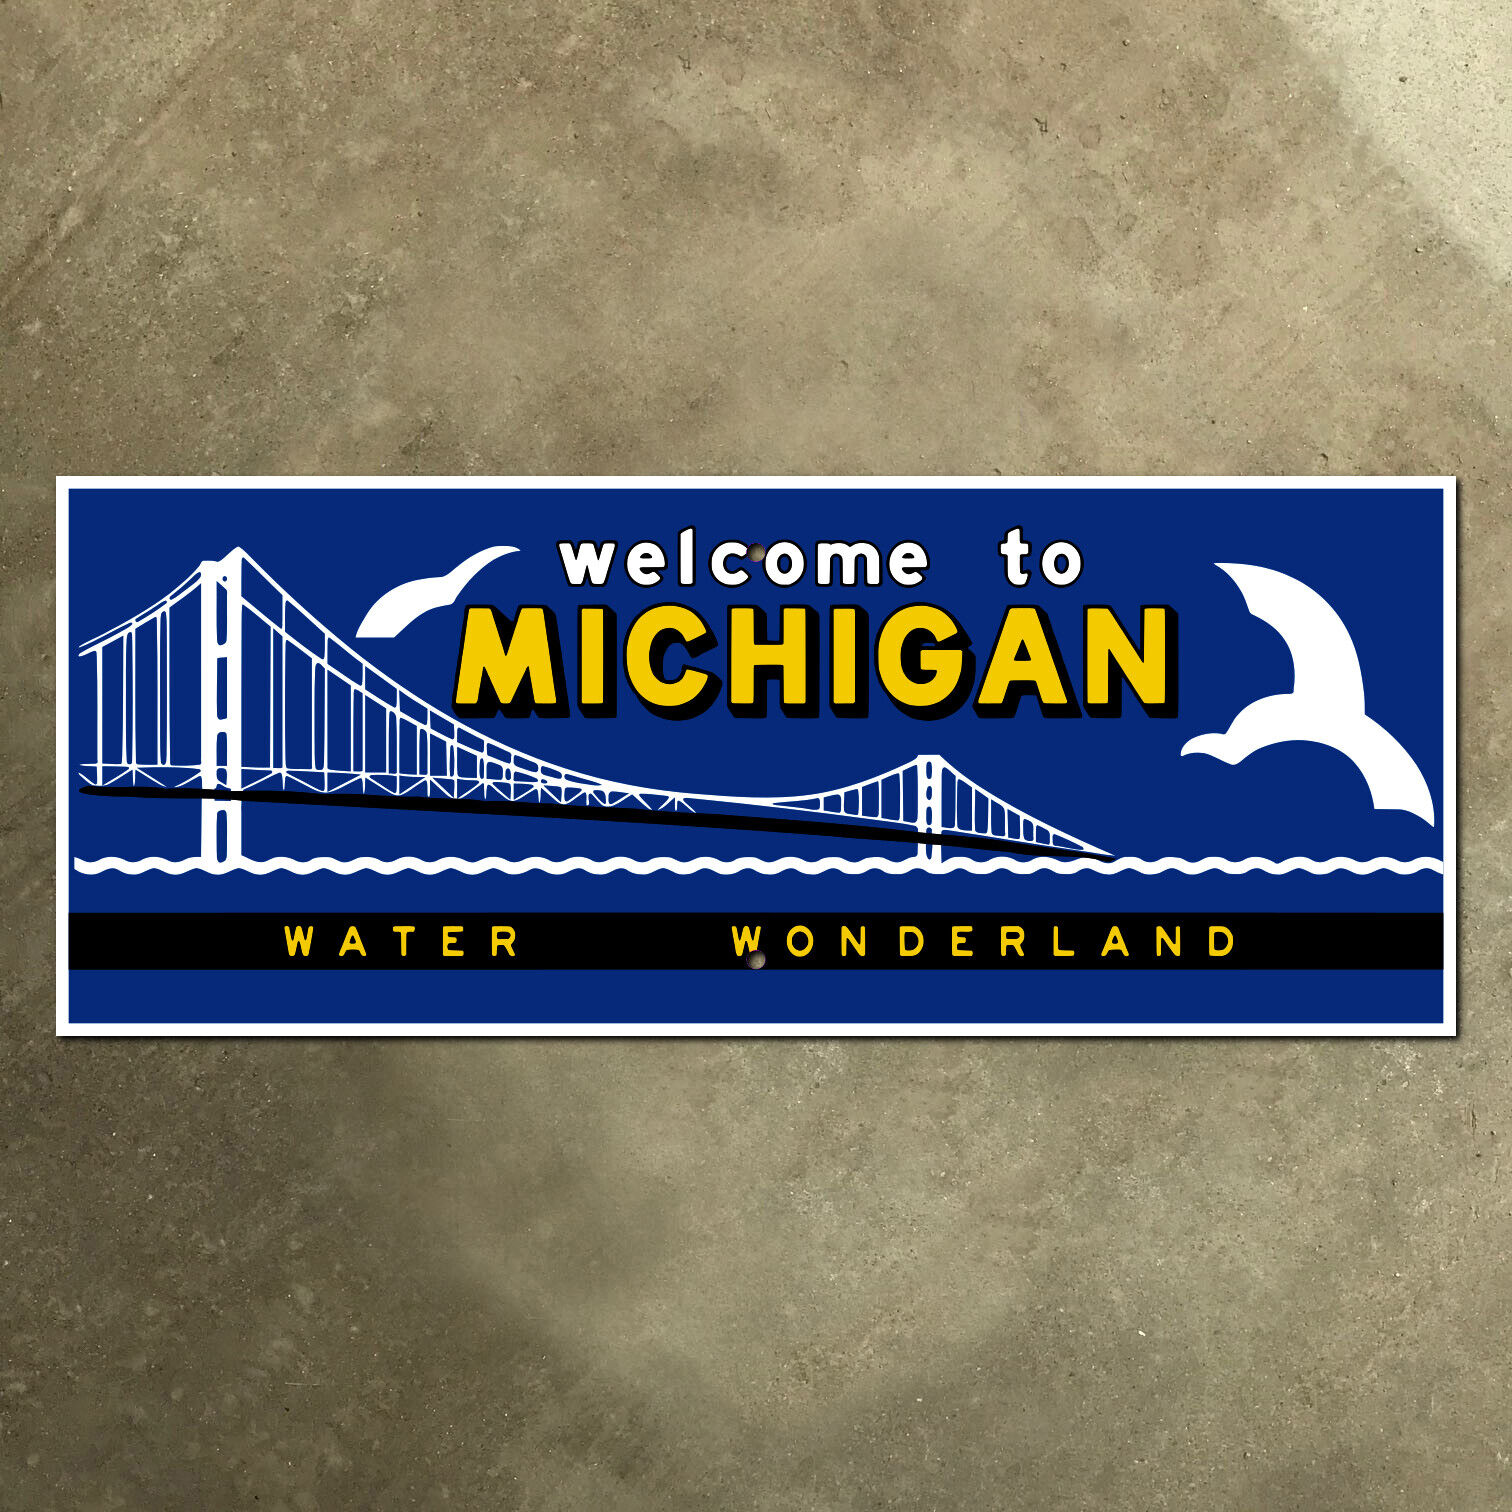 Michigan state line highway marker road sign 1957 water wonderland 27x11